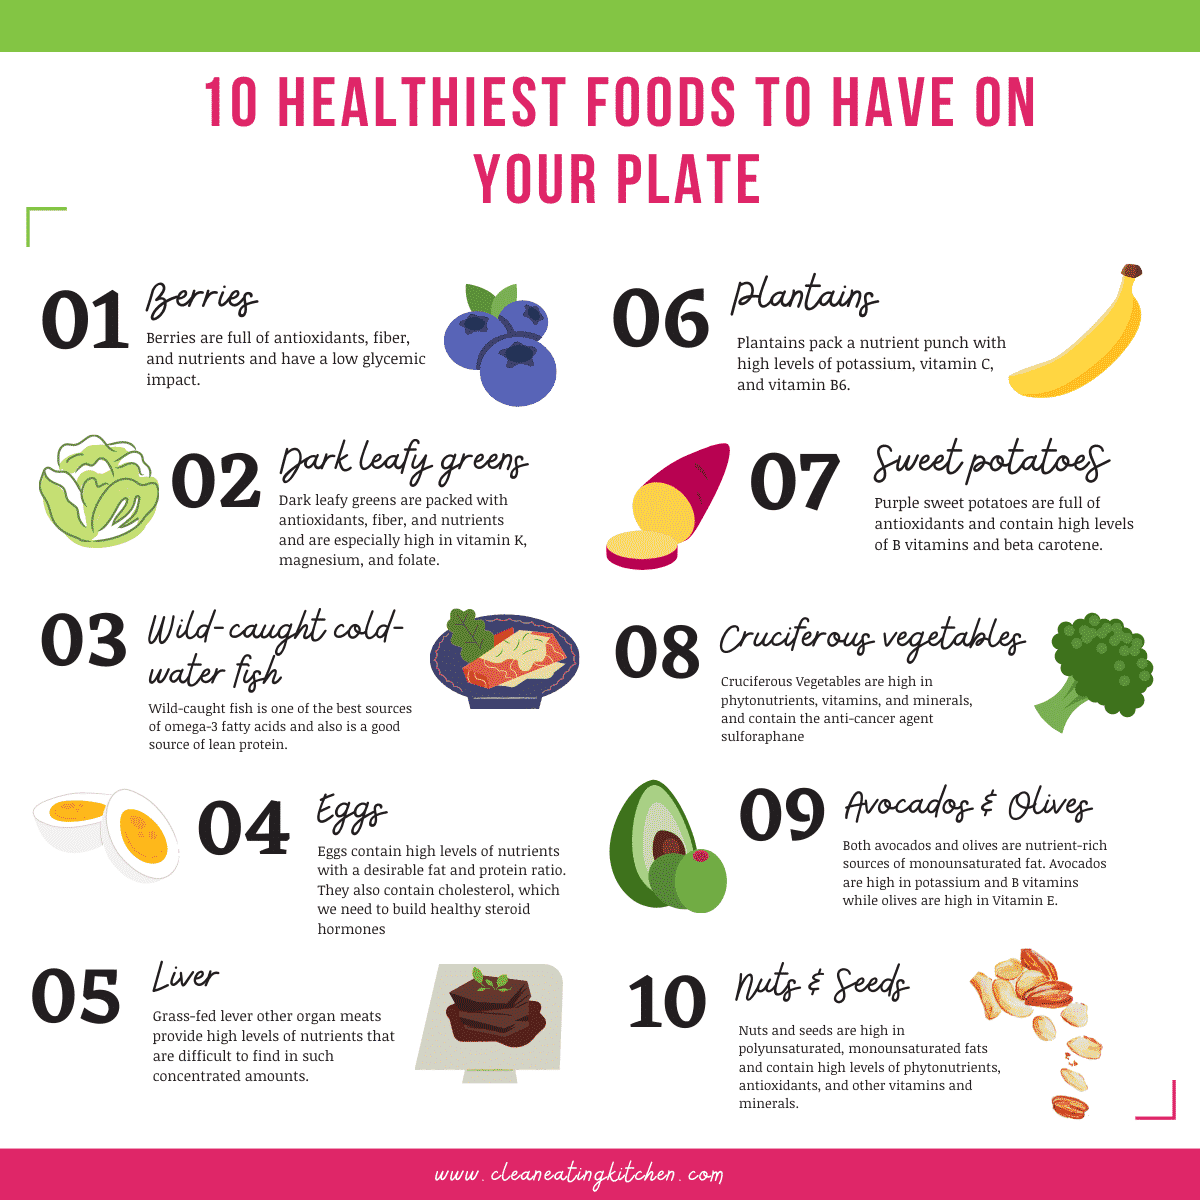 infografía que detalla los 10 alimentos más saludables para tener en tu plato